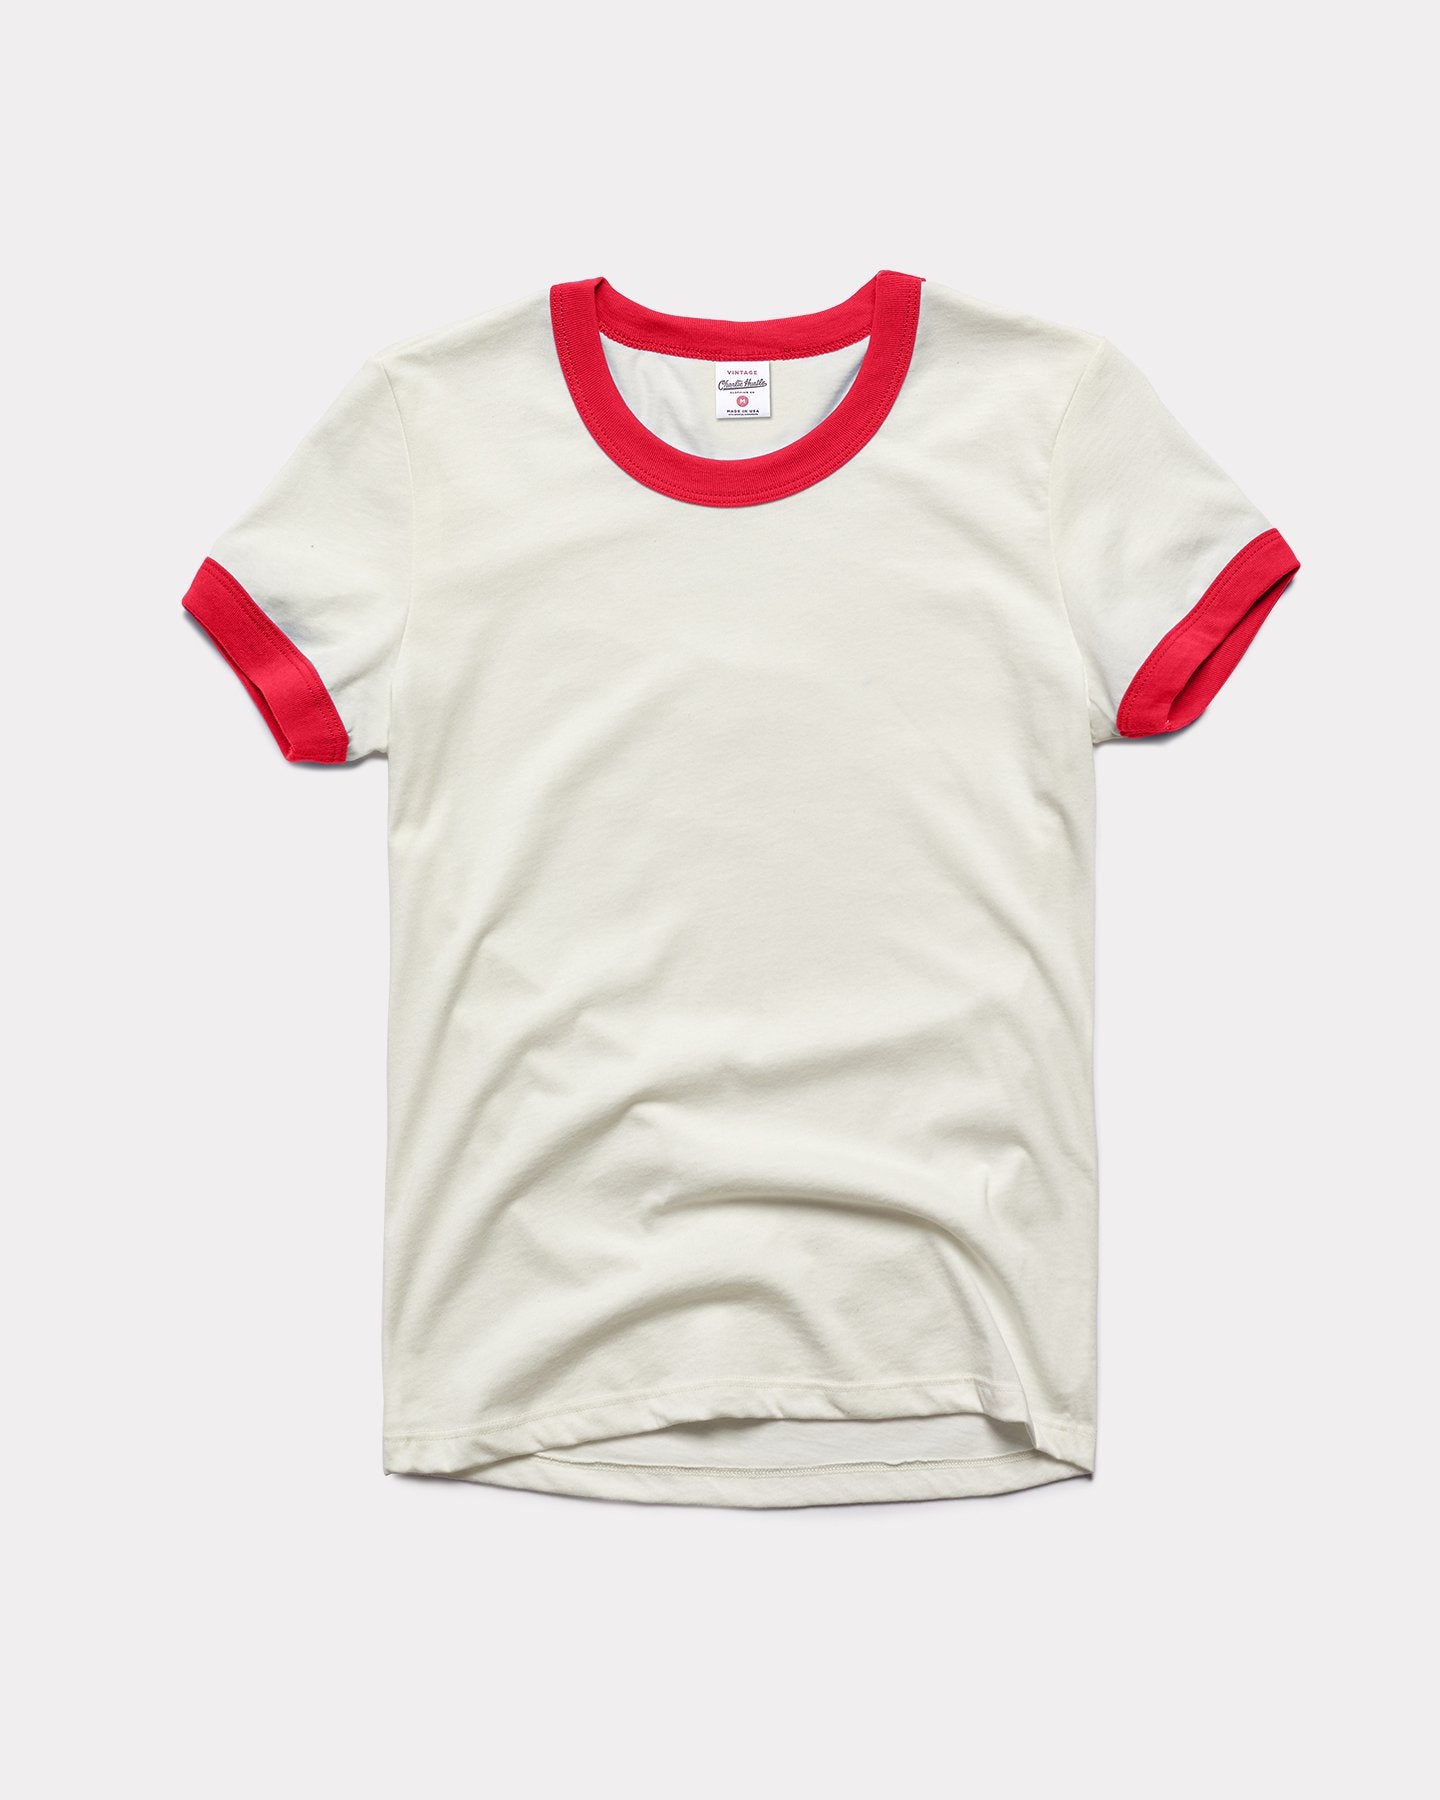 Women's White & Red Vintage T-Shirt | CHARLIE HUSTLE